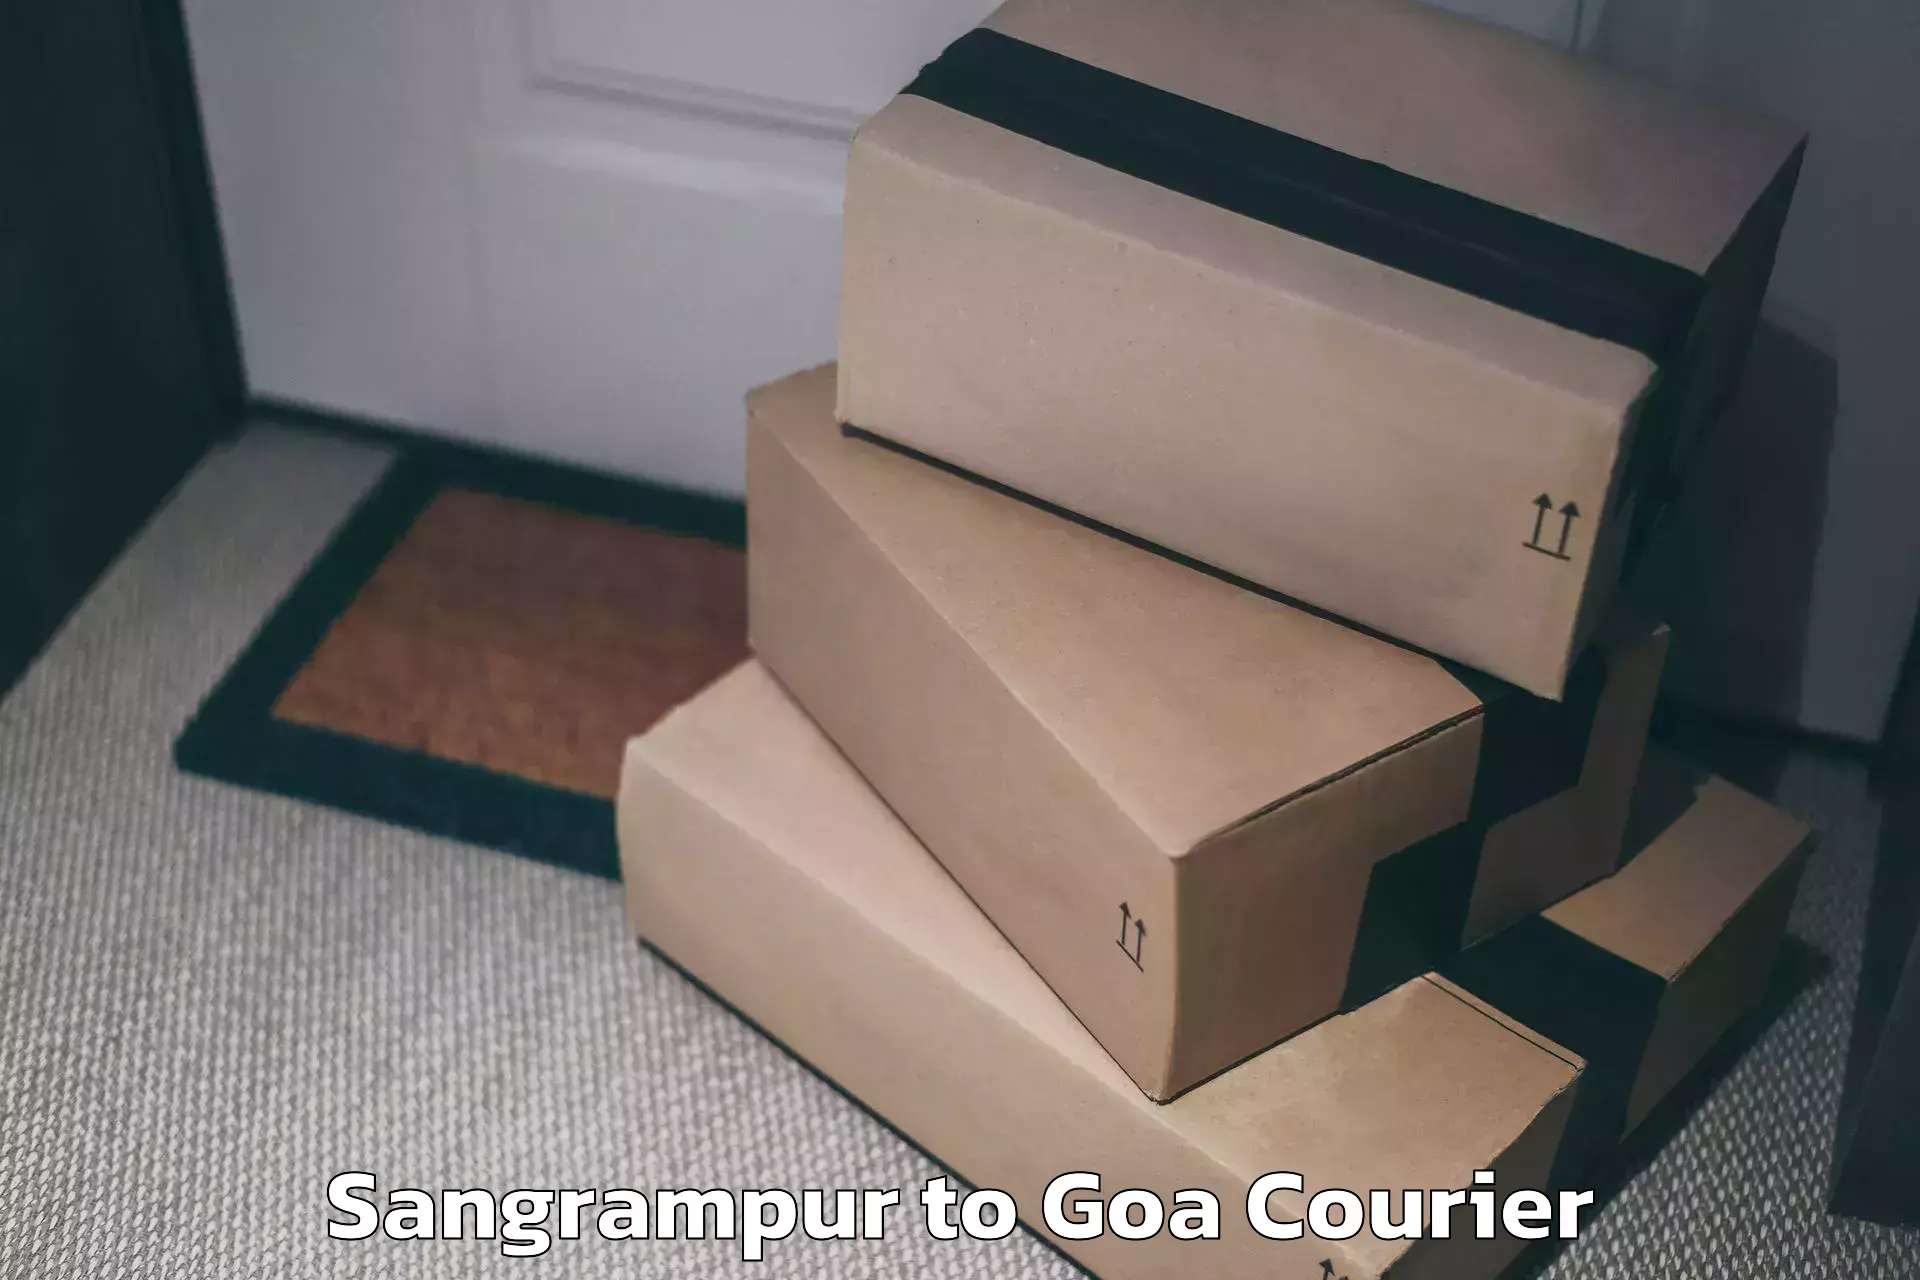 Luggage shipment tracking Sangrampur to Ponda